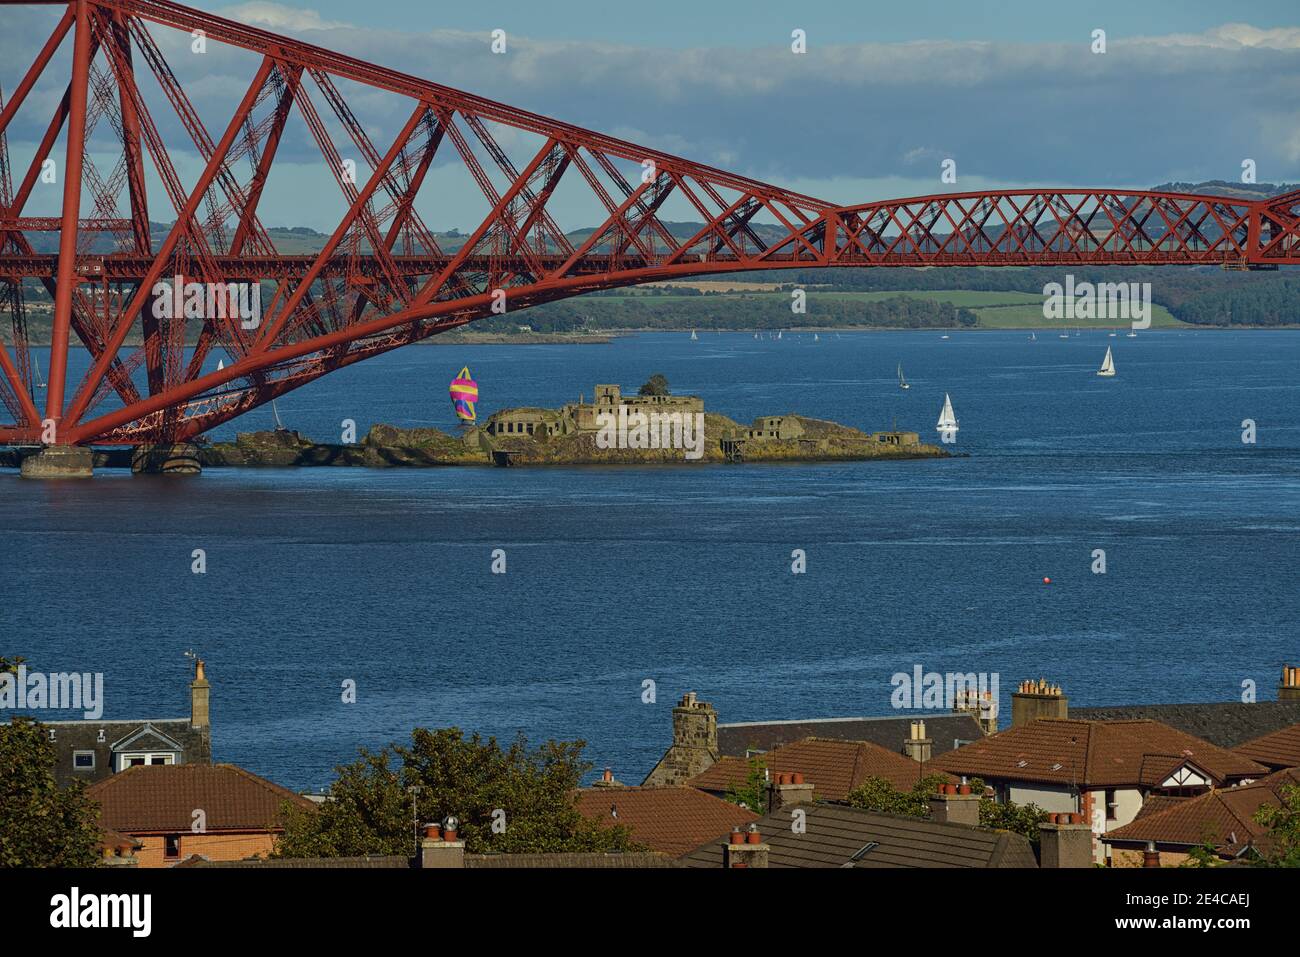 Forth Road Bridge et Forth Bridge sur le Firth de Forth près d'Edimbourg, Inchgarvie, une petite île rocheuse, Ecosse, Grande-Bretagne, Mer du Nord, Iles britanniques, Europe Banque D'Images